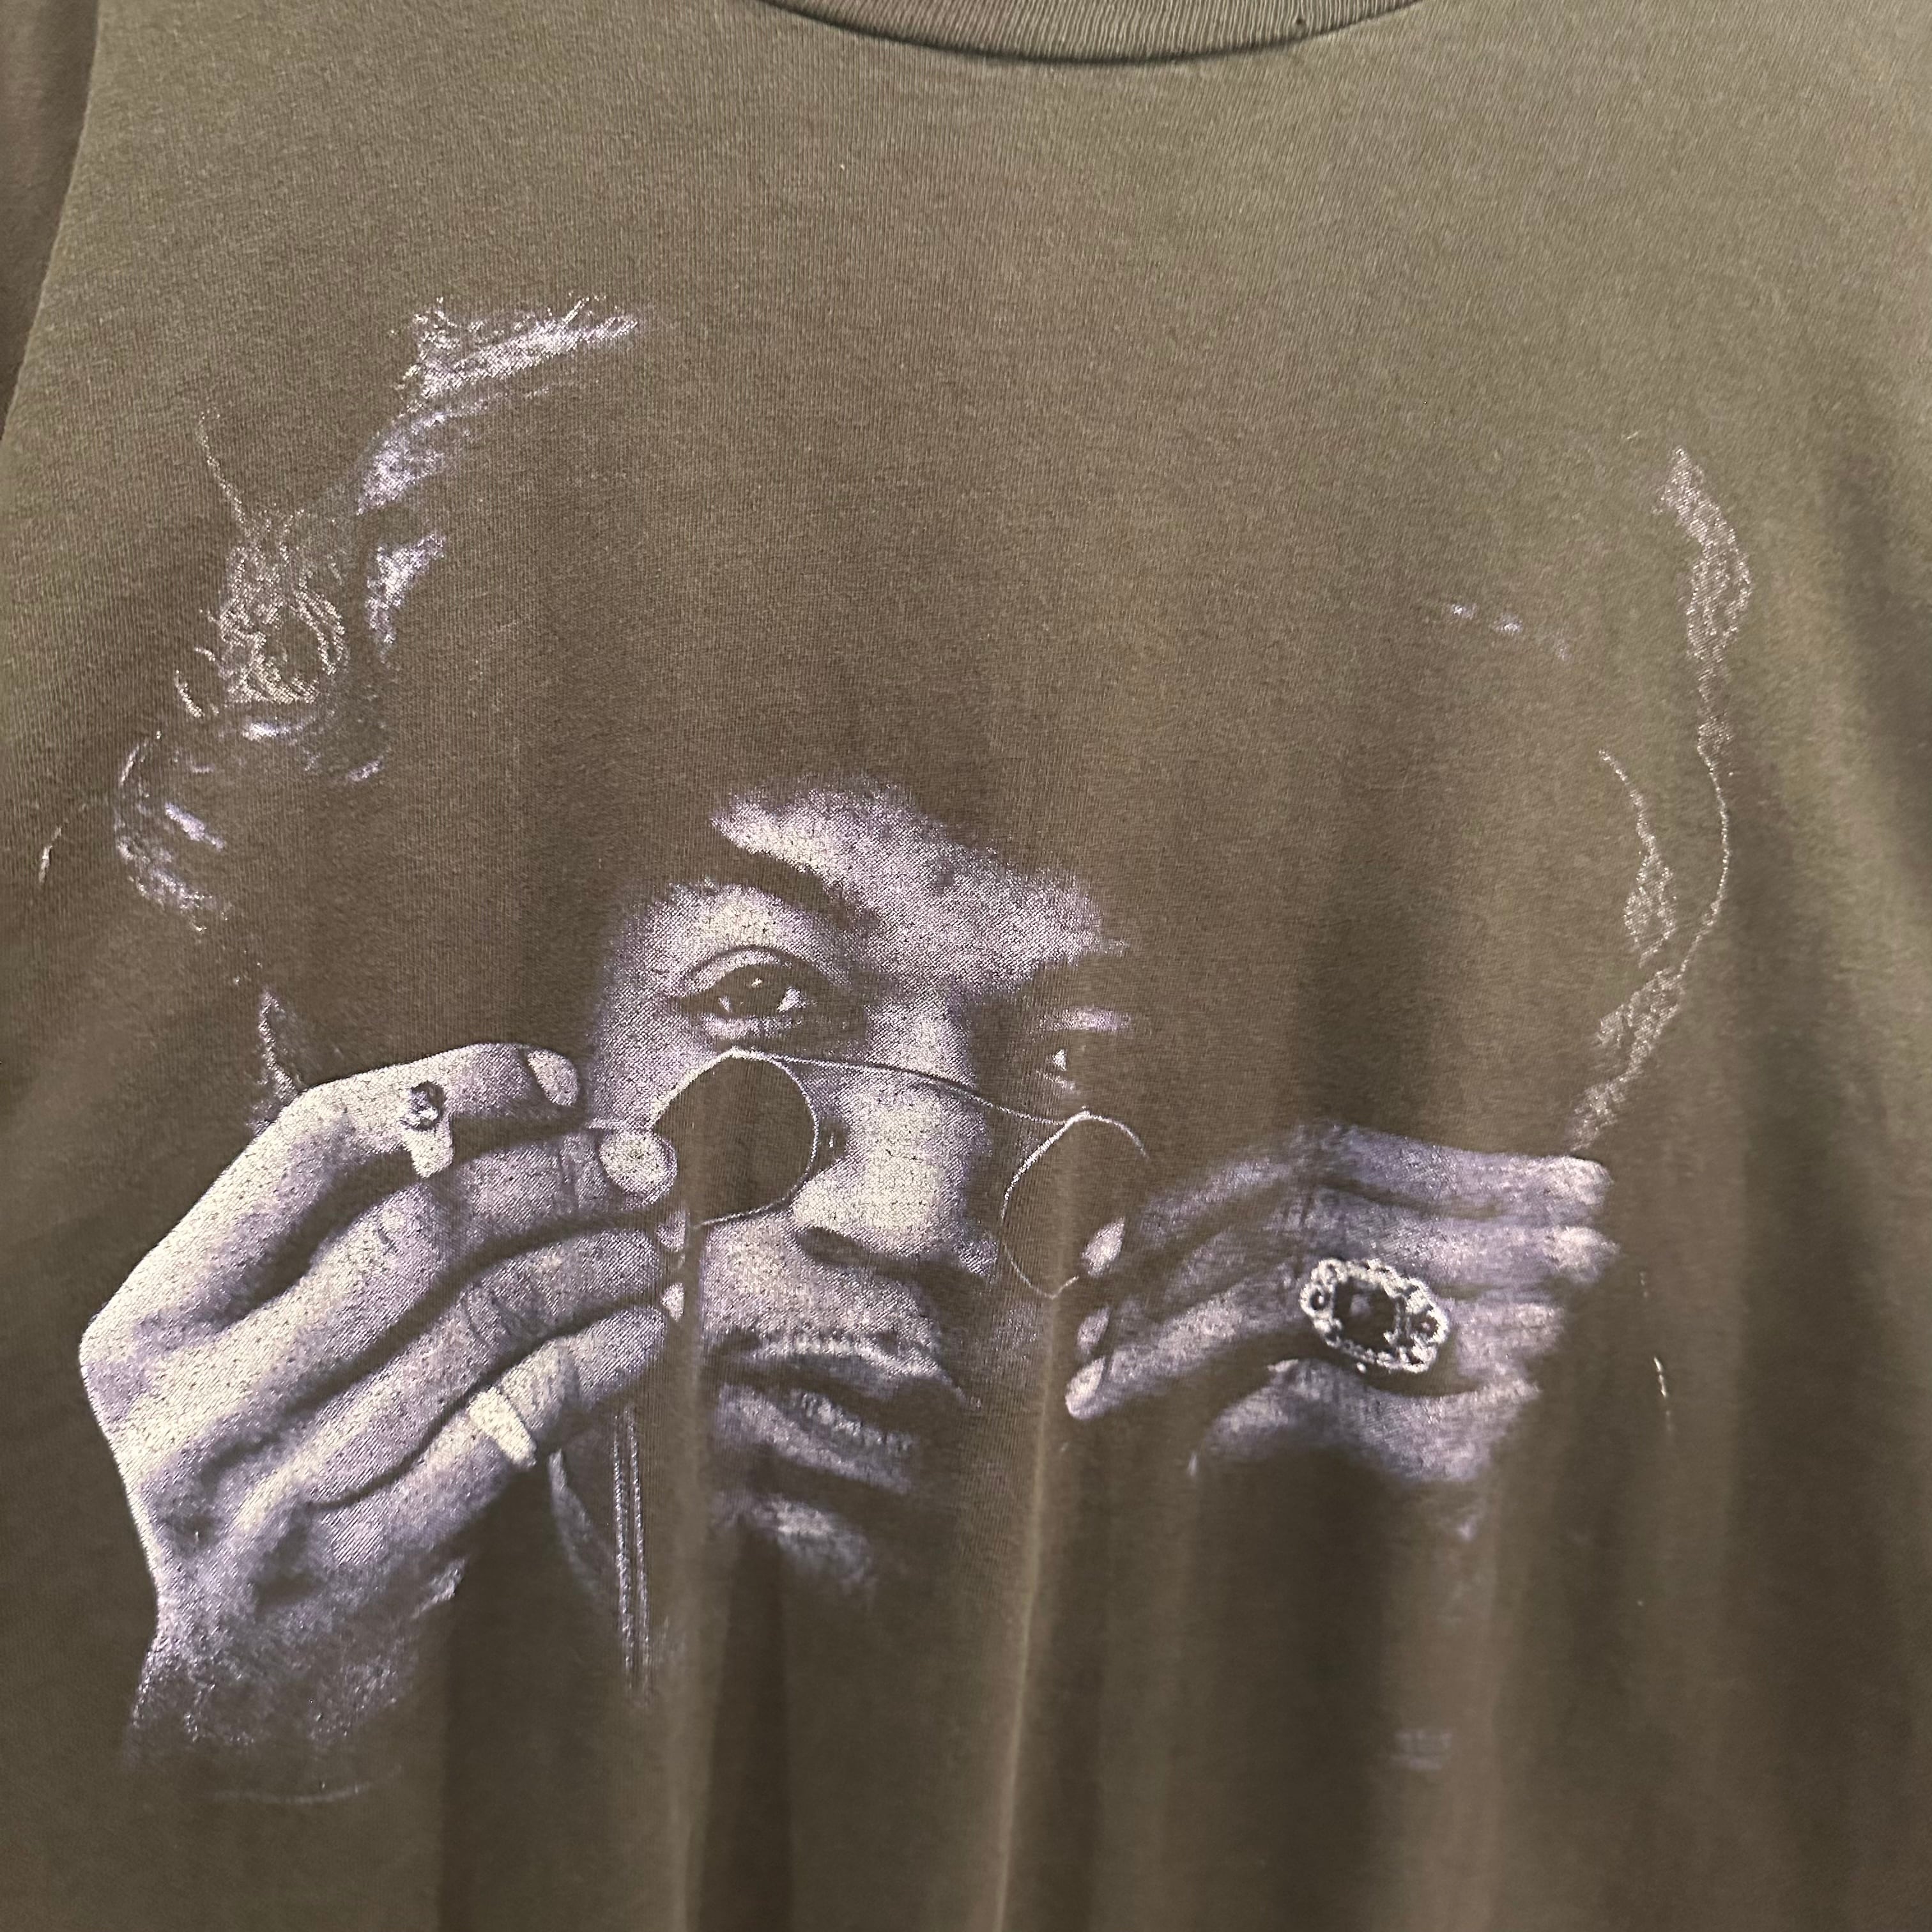 希少 90's Jimi Hendrix 1992 ロング Tシャツ